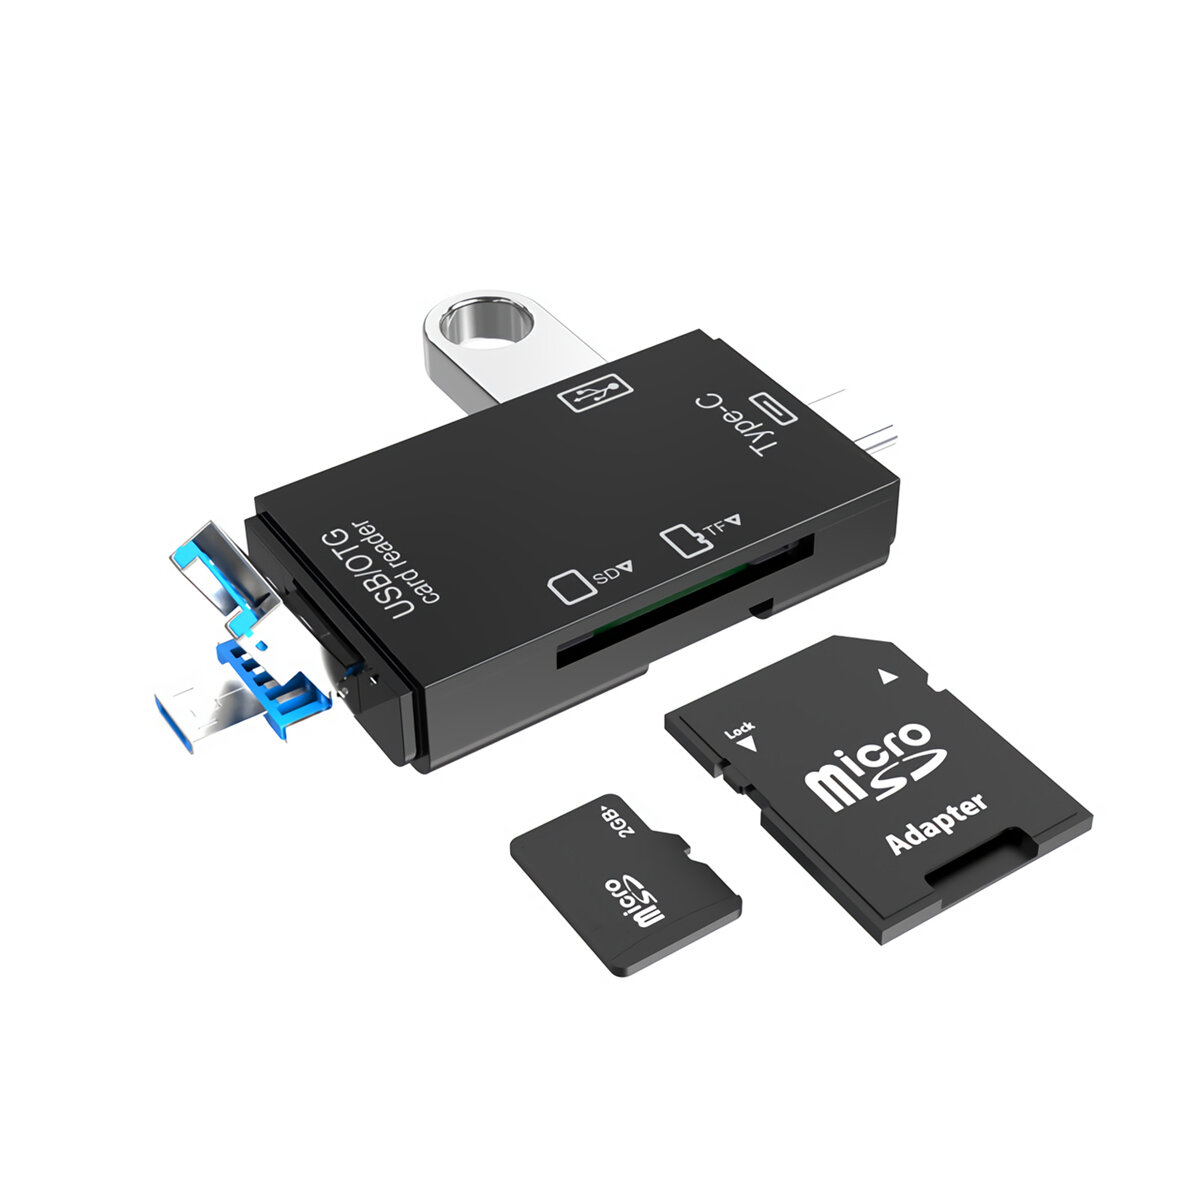 

6-в-1 Type-C Многофункциональный кард-ридер USB 2.0 OTG Карта памяти SD / TF Card U Считыватель дисков Мобильный Android